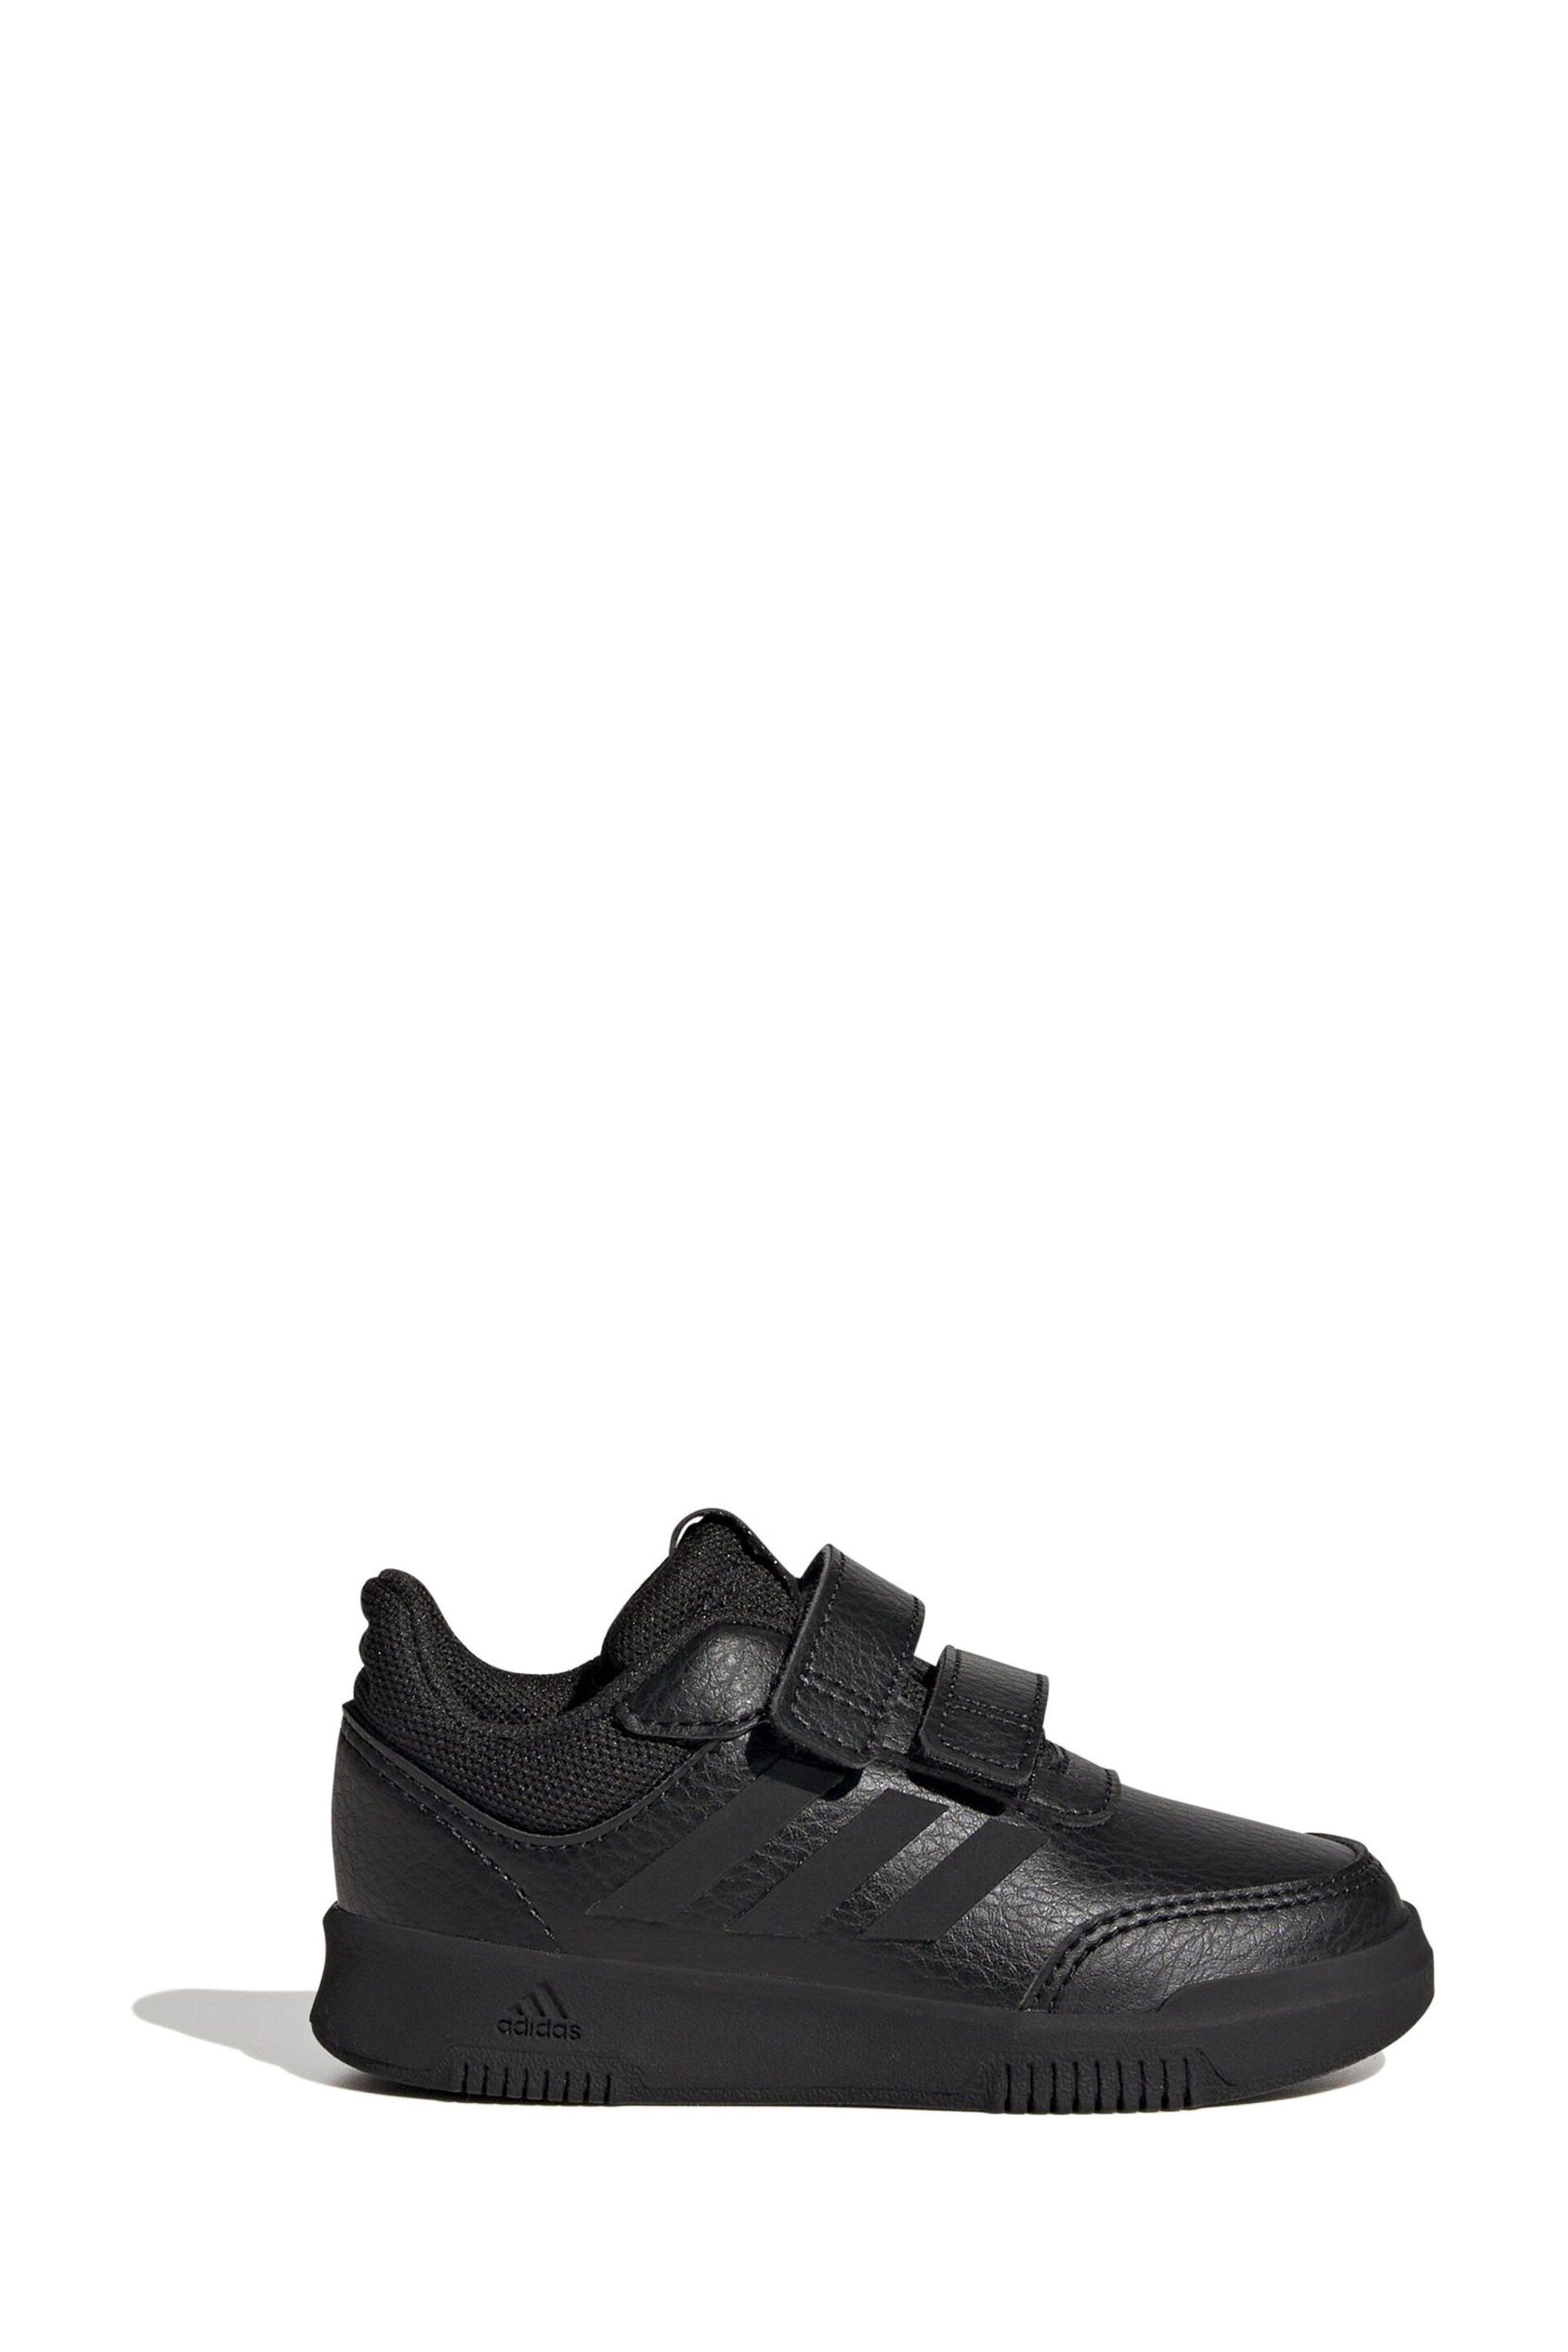 adidas Black Tensaur Hook and Loop Shoes - Image 1 of 8